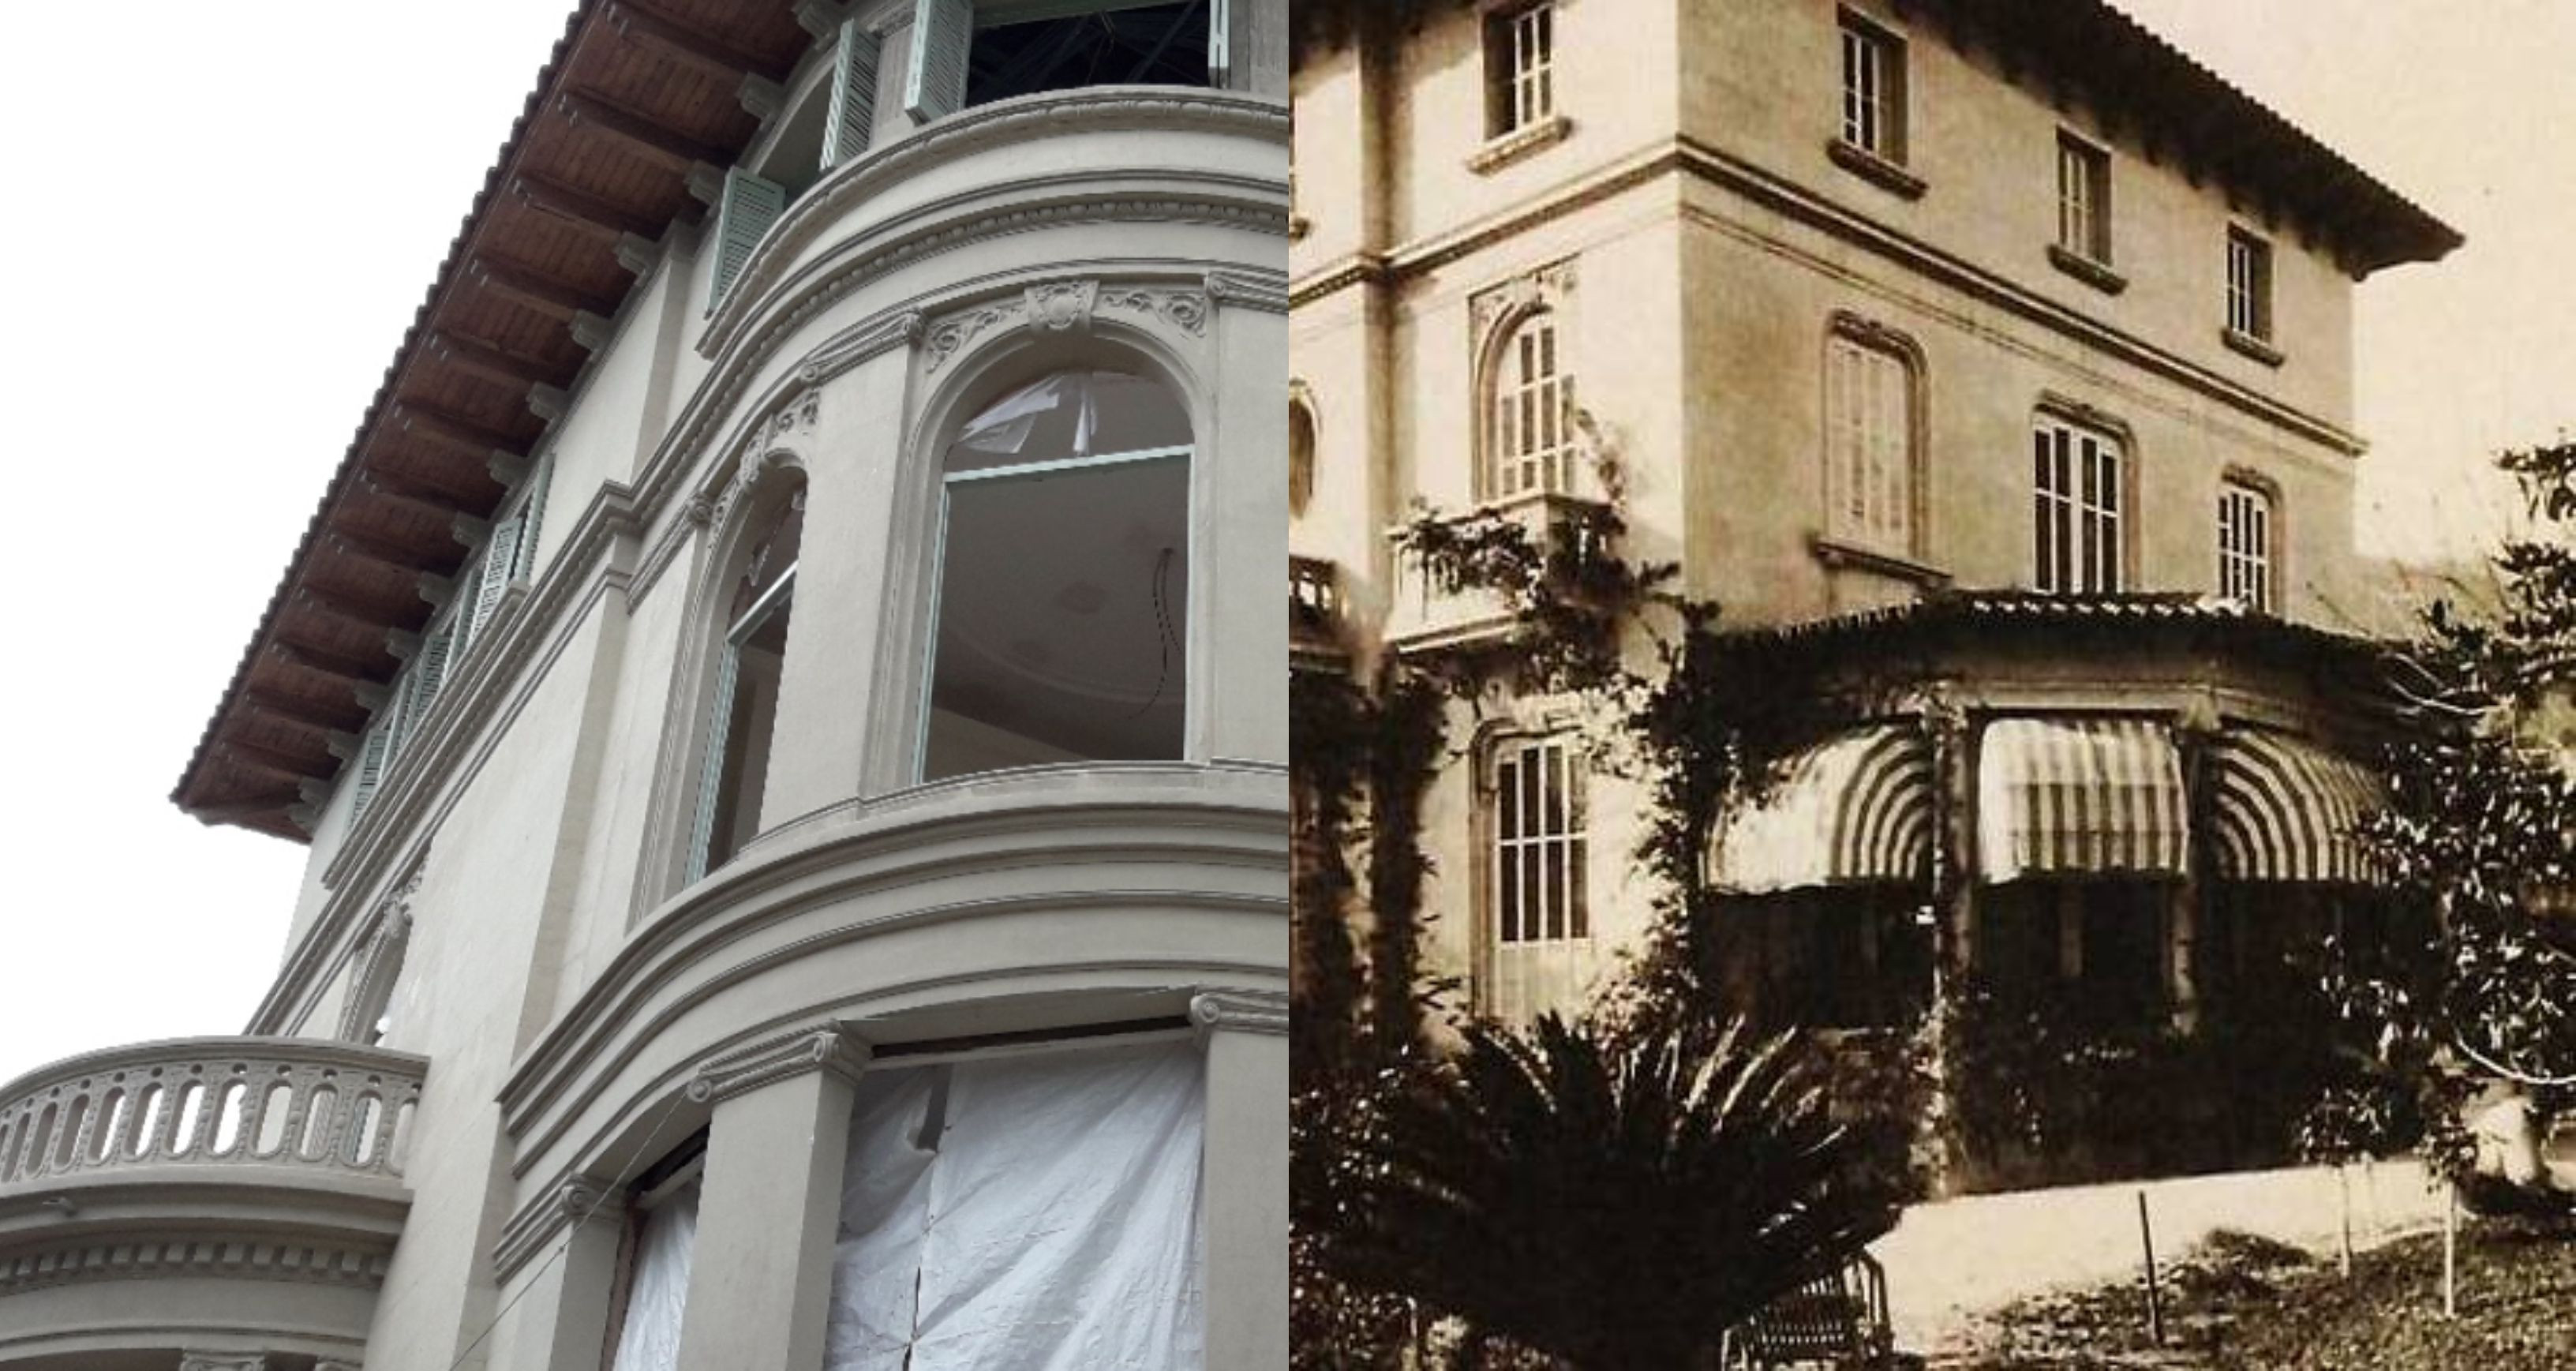 La Torre Macaya, hotel del libro 'La Sombra del Viento' de Carlos Ruiz Zafón', antes y después / MA